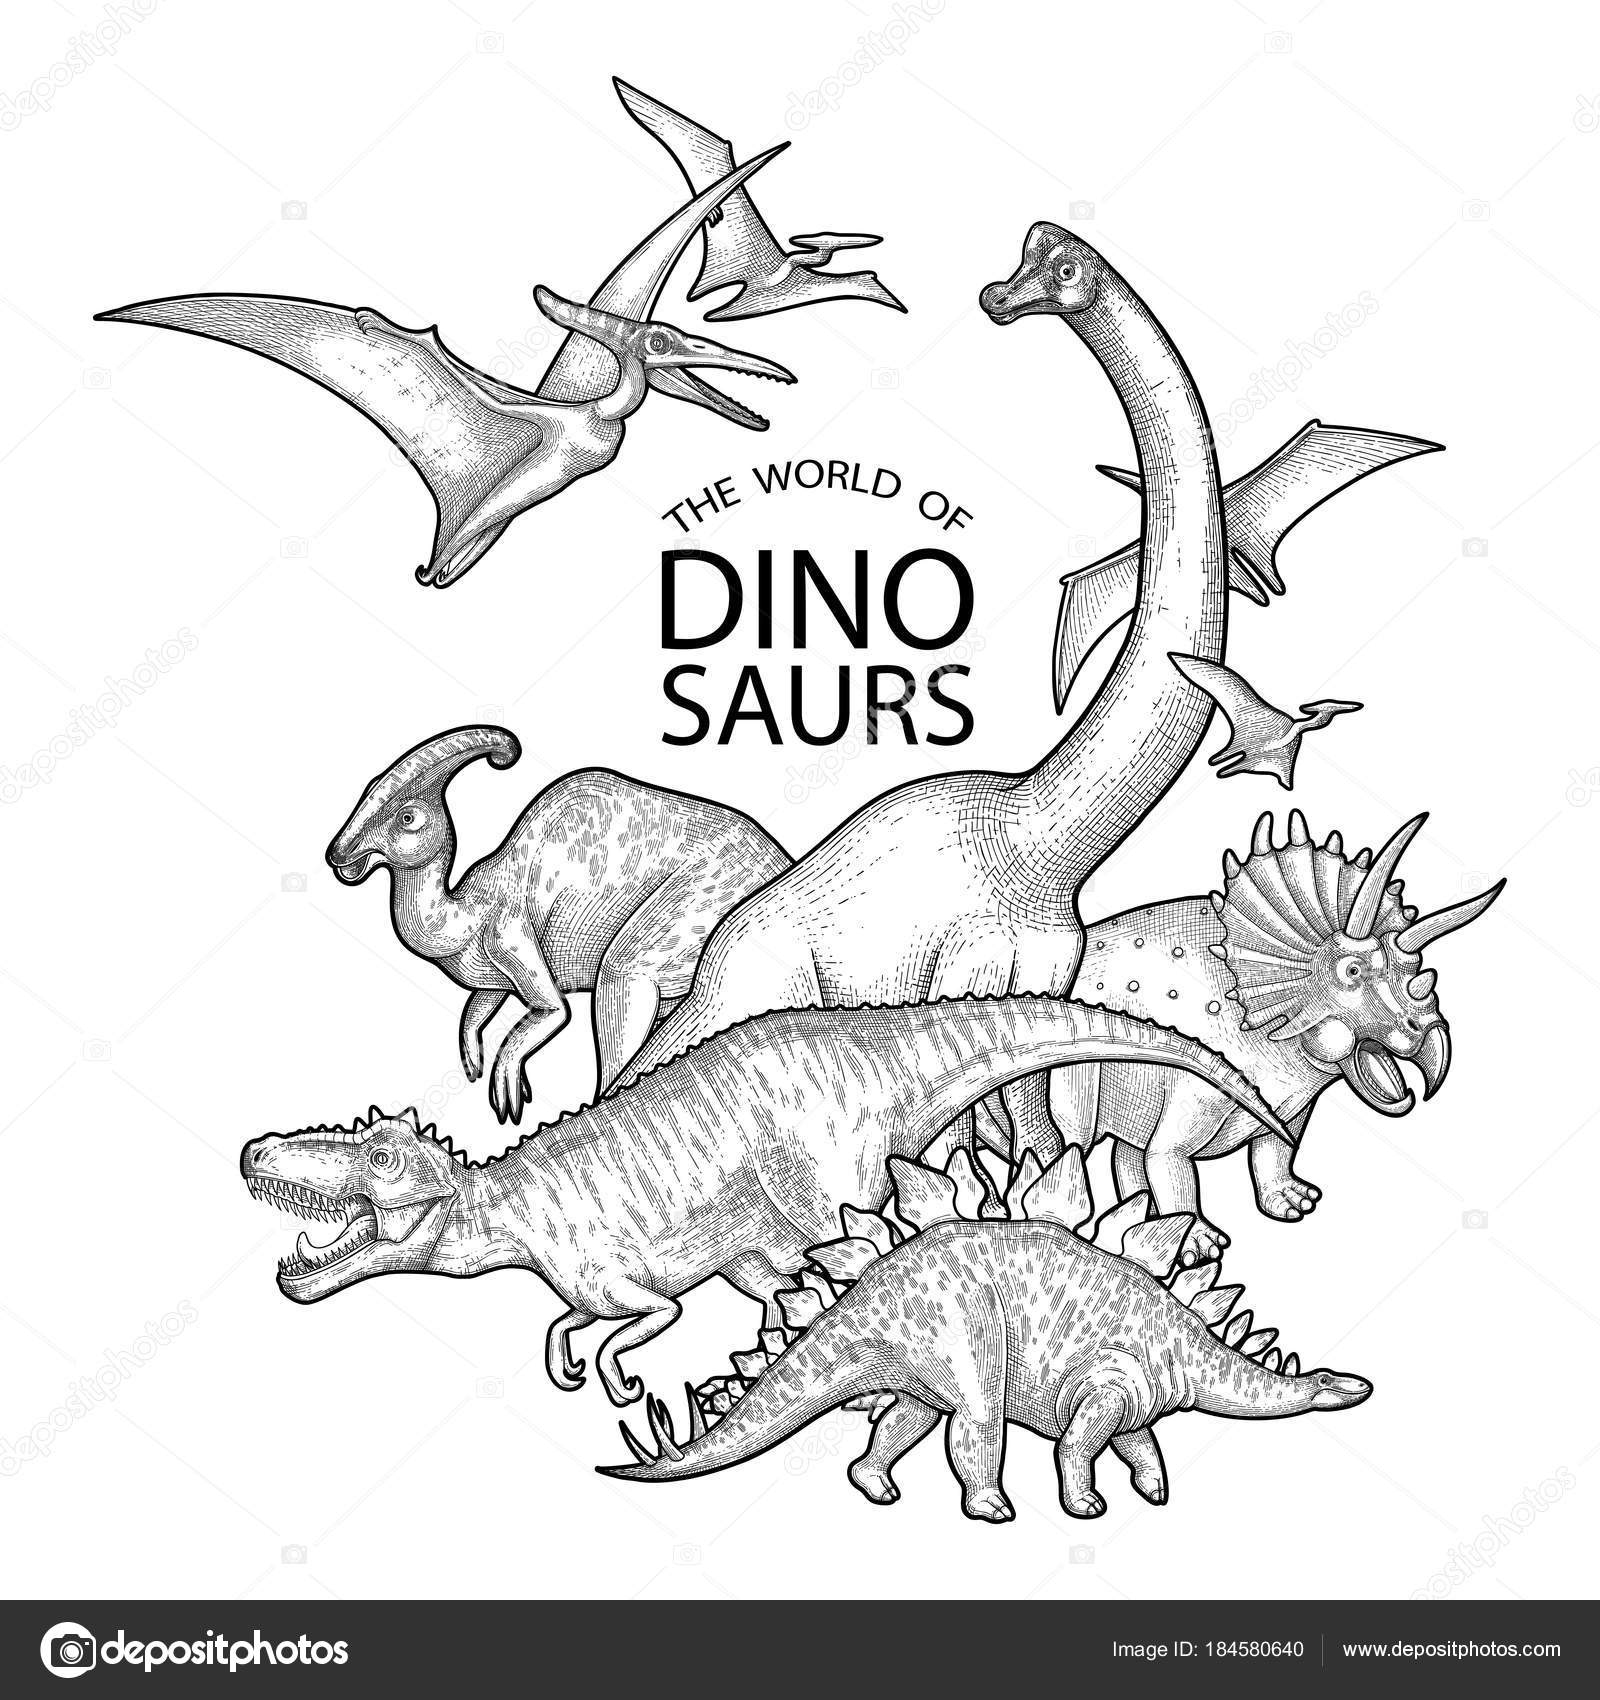 Dinossauro gráfico realista vetor(es) de stock de ©homunkulus28